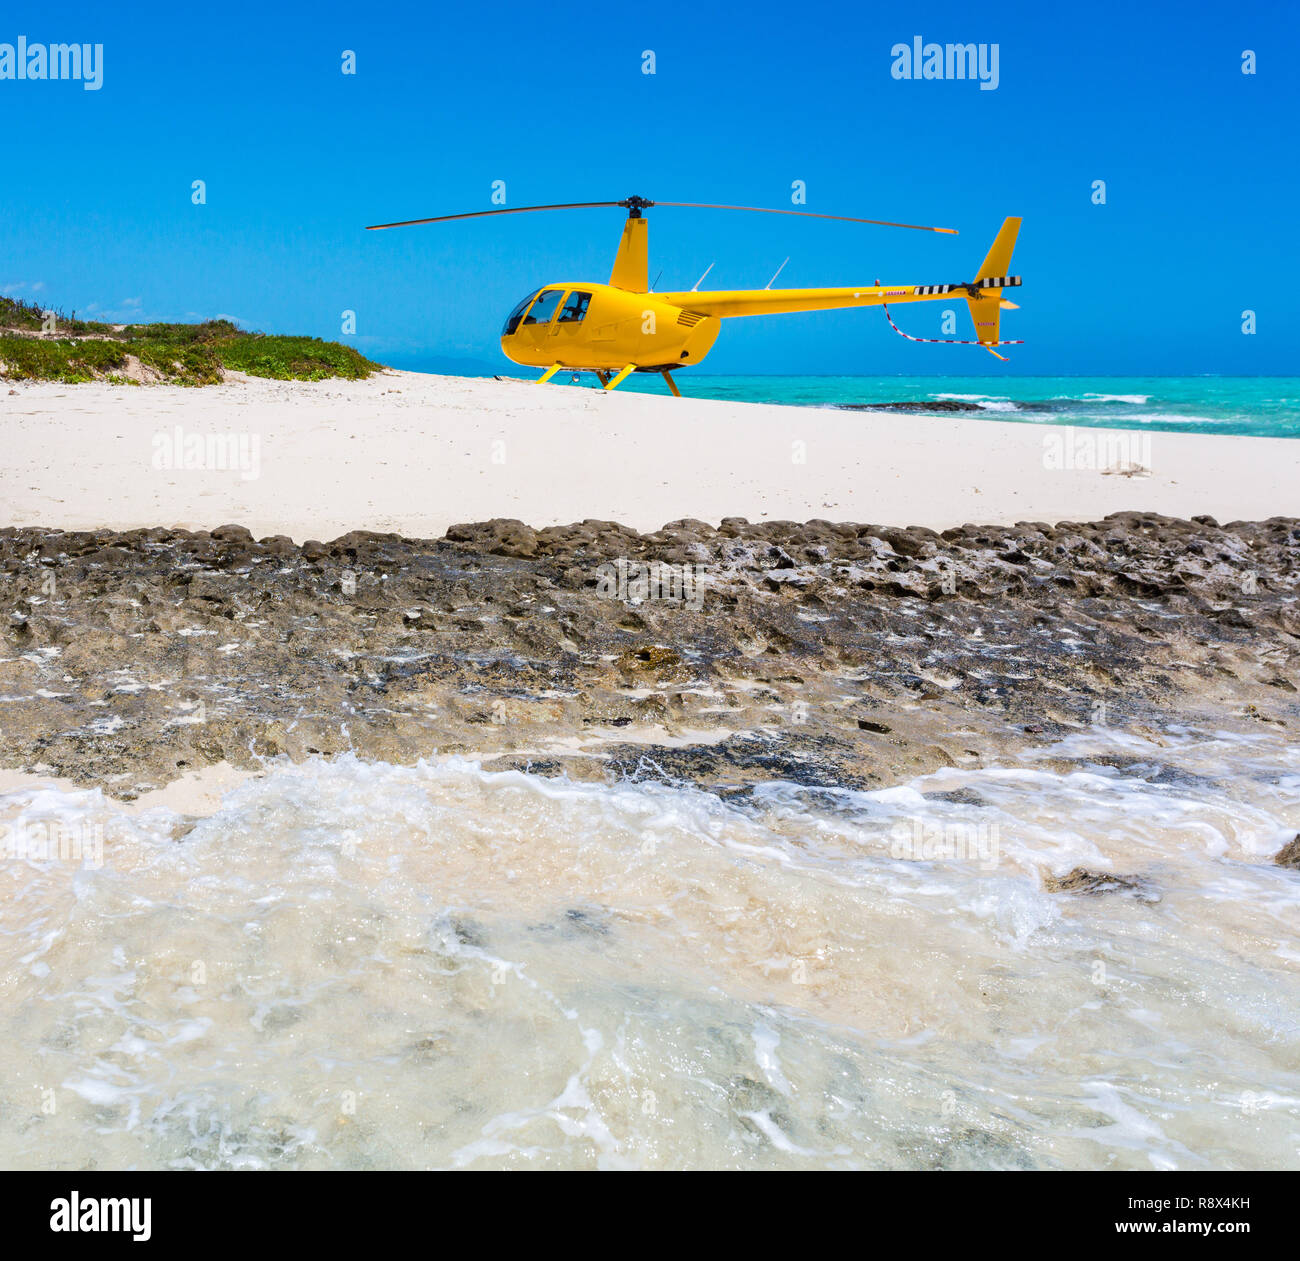 Un elicottero giallo è atterrato su un idilliaco vuoto spiaggia sabbiosa di una remota isola, un azzurro turchese laguna blu in background, Nuova Caledonia, Melanesia. Foto Stock